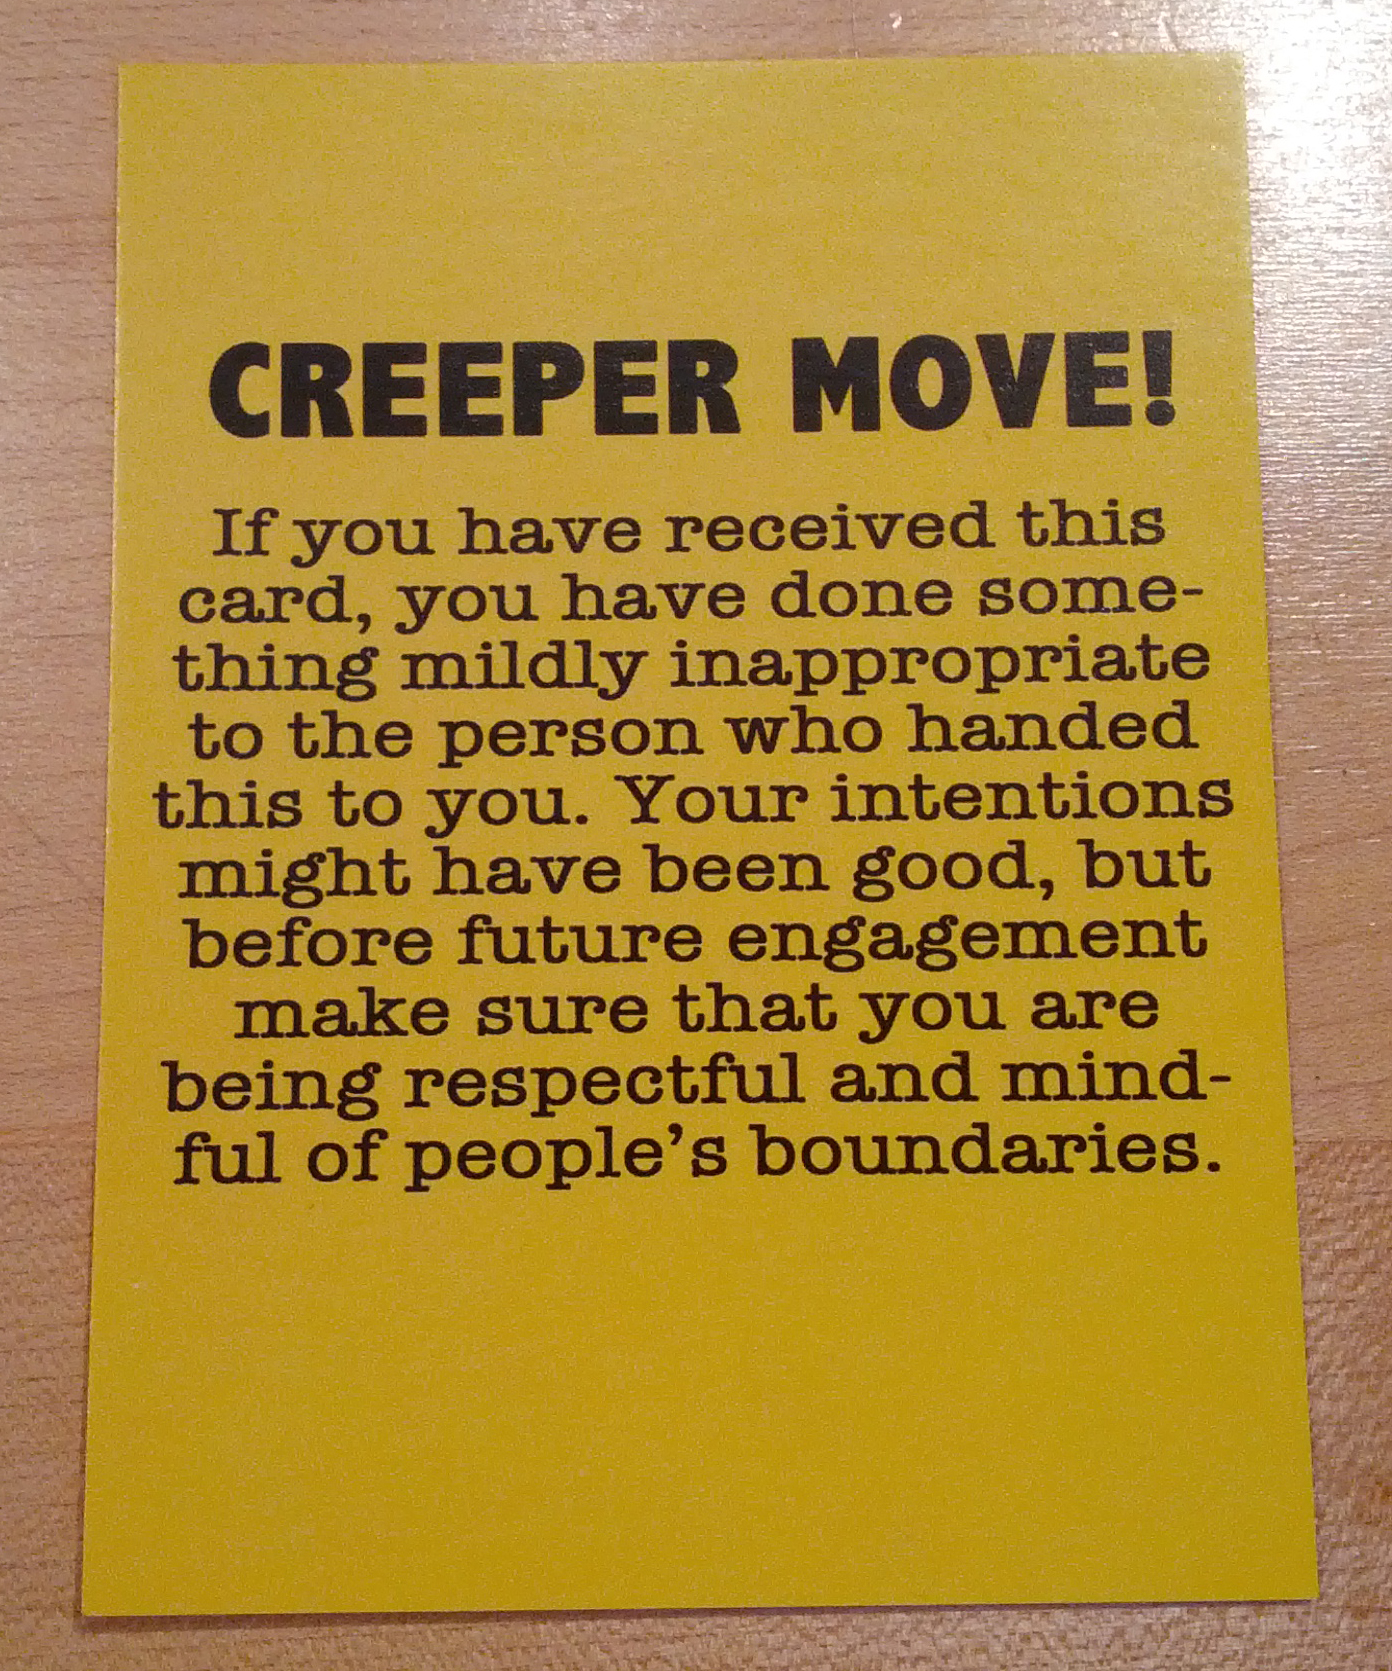 Creeper move